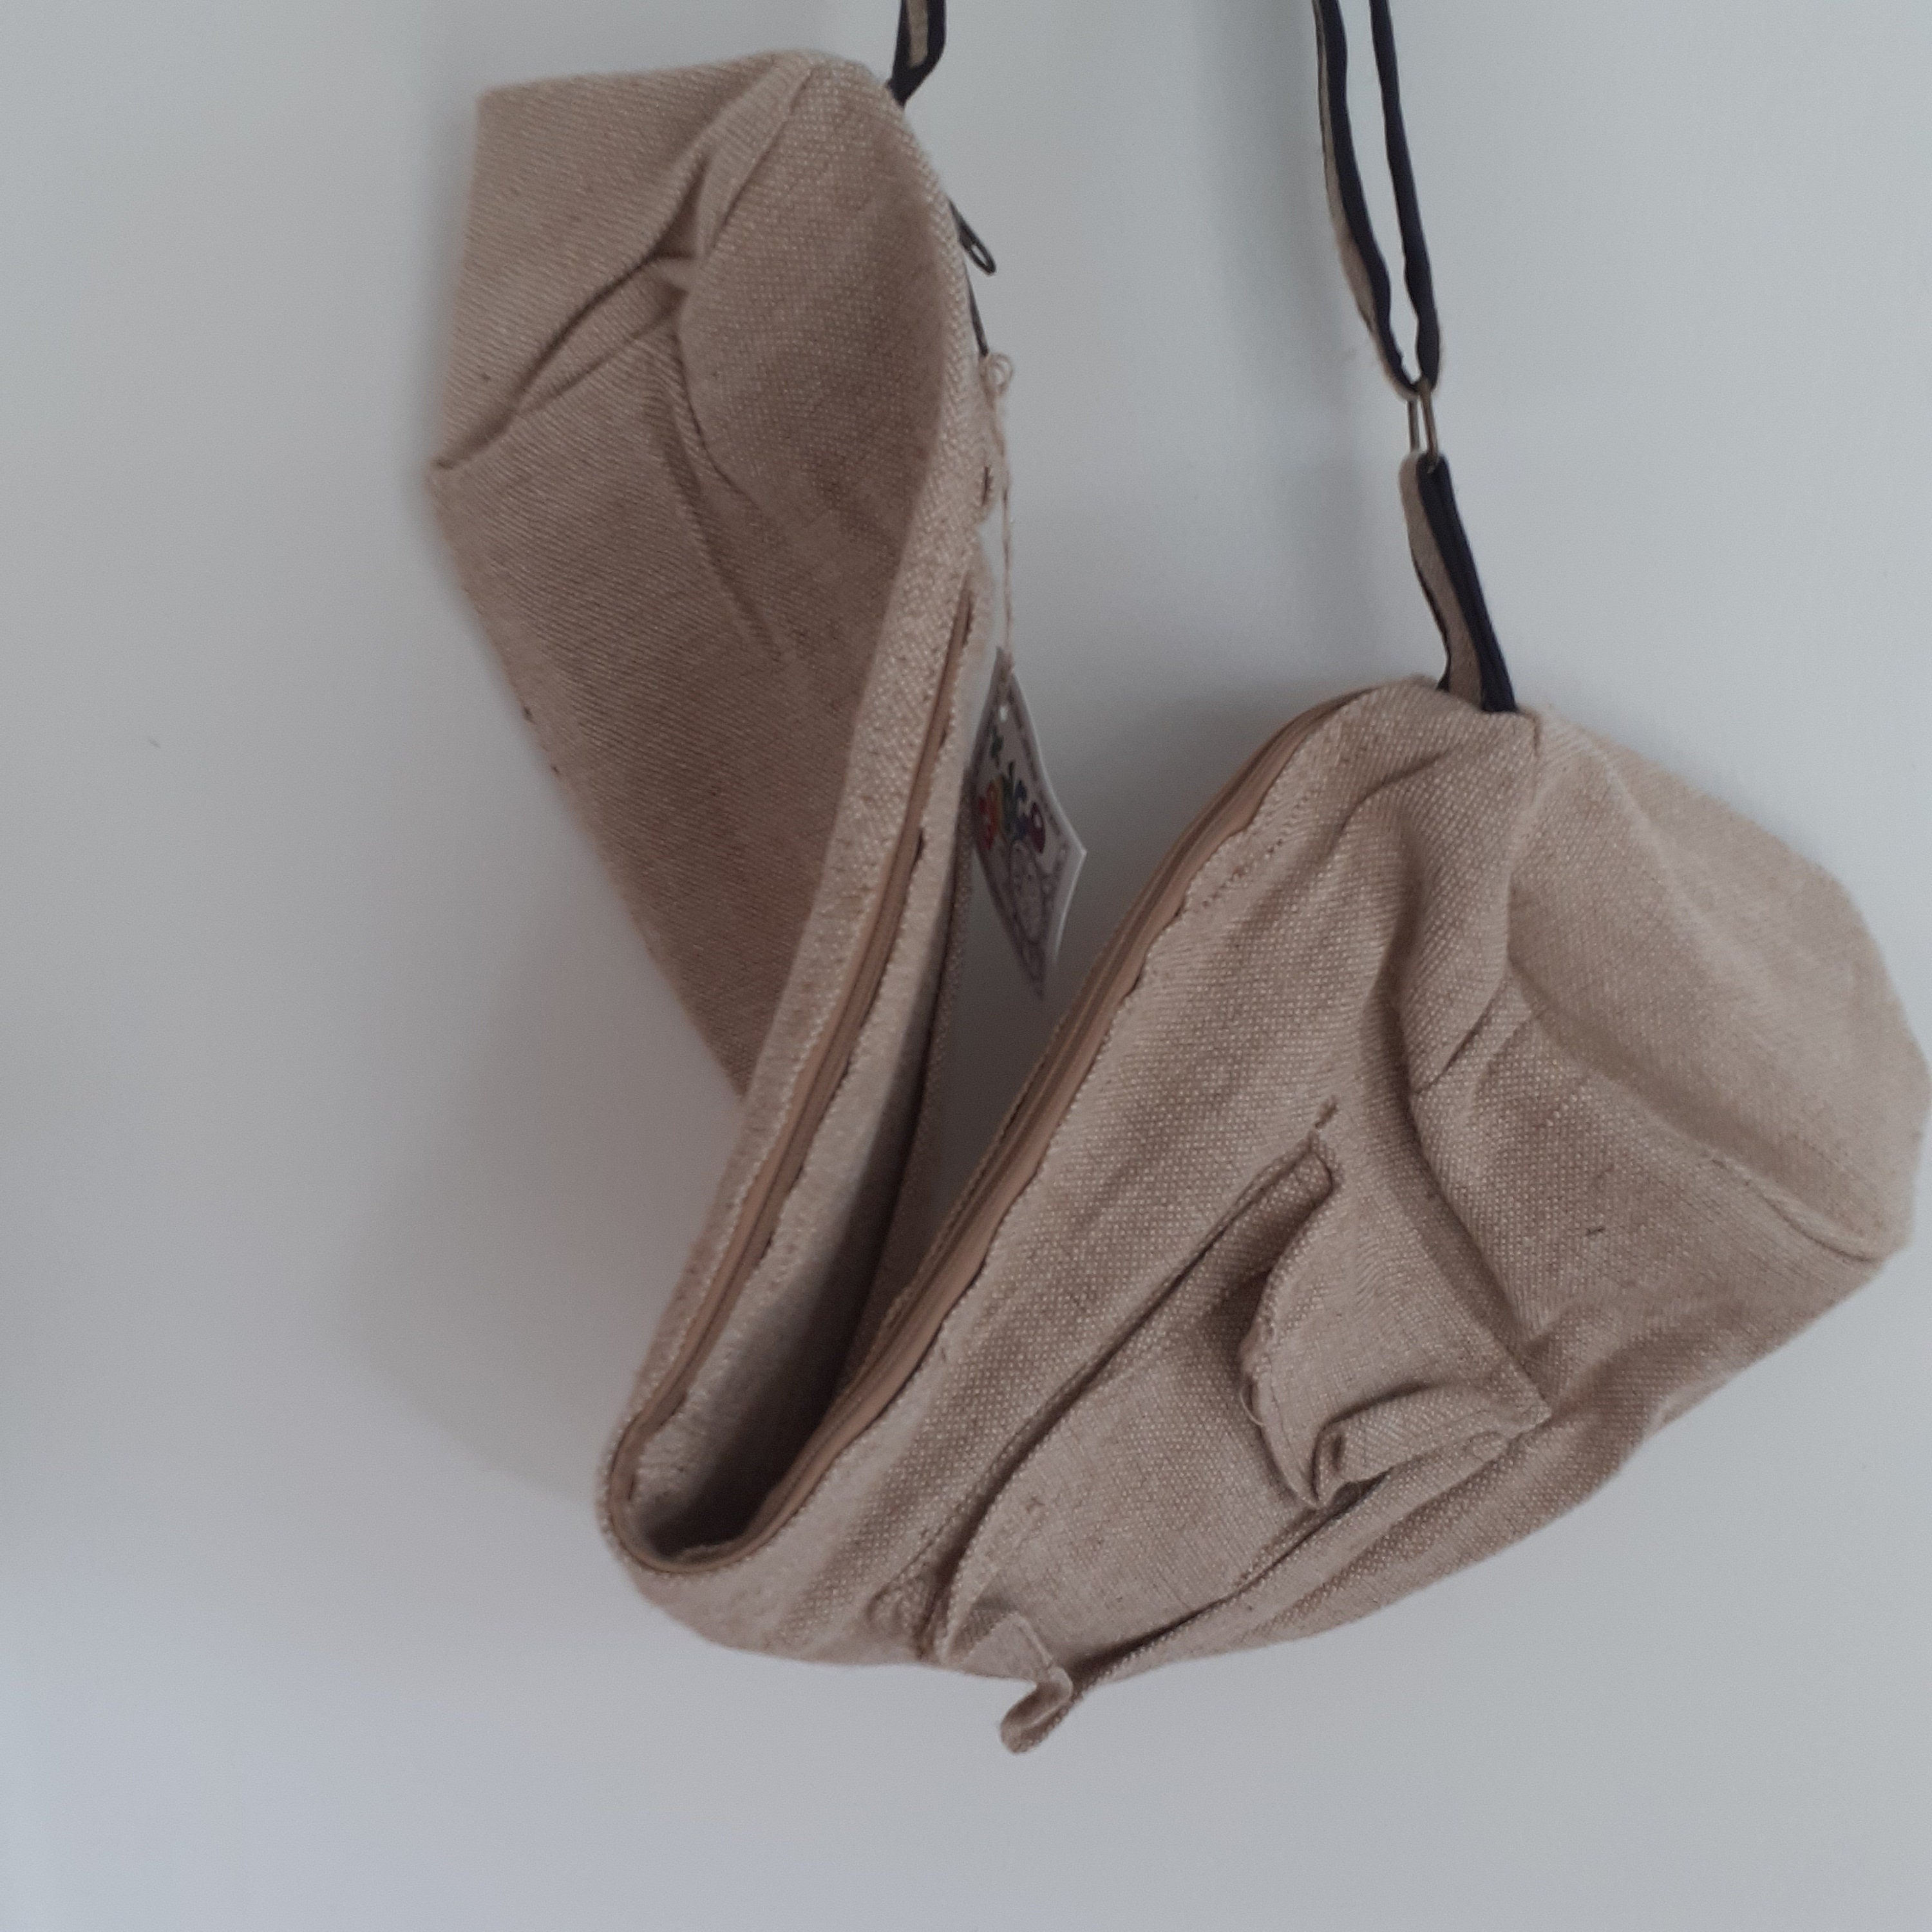 Cotton/Canvas Yoga Mat Bag, Beige